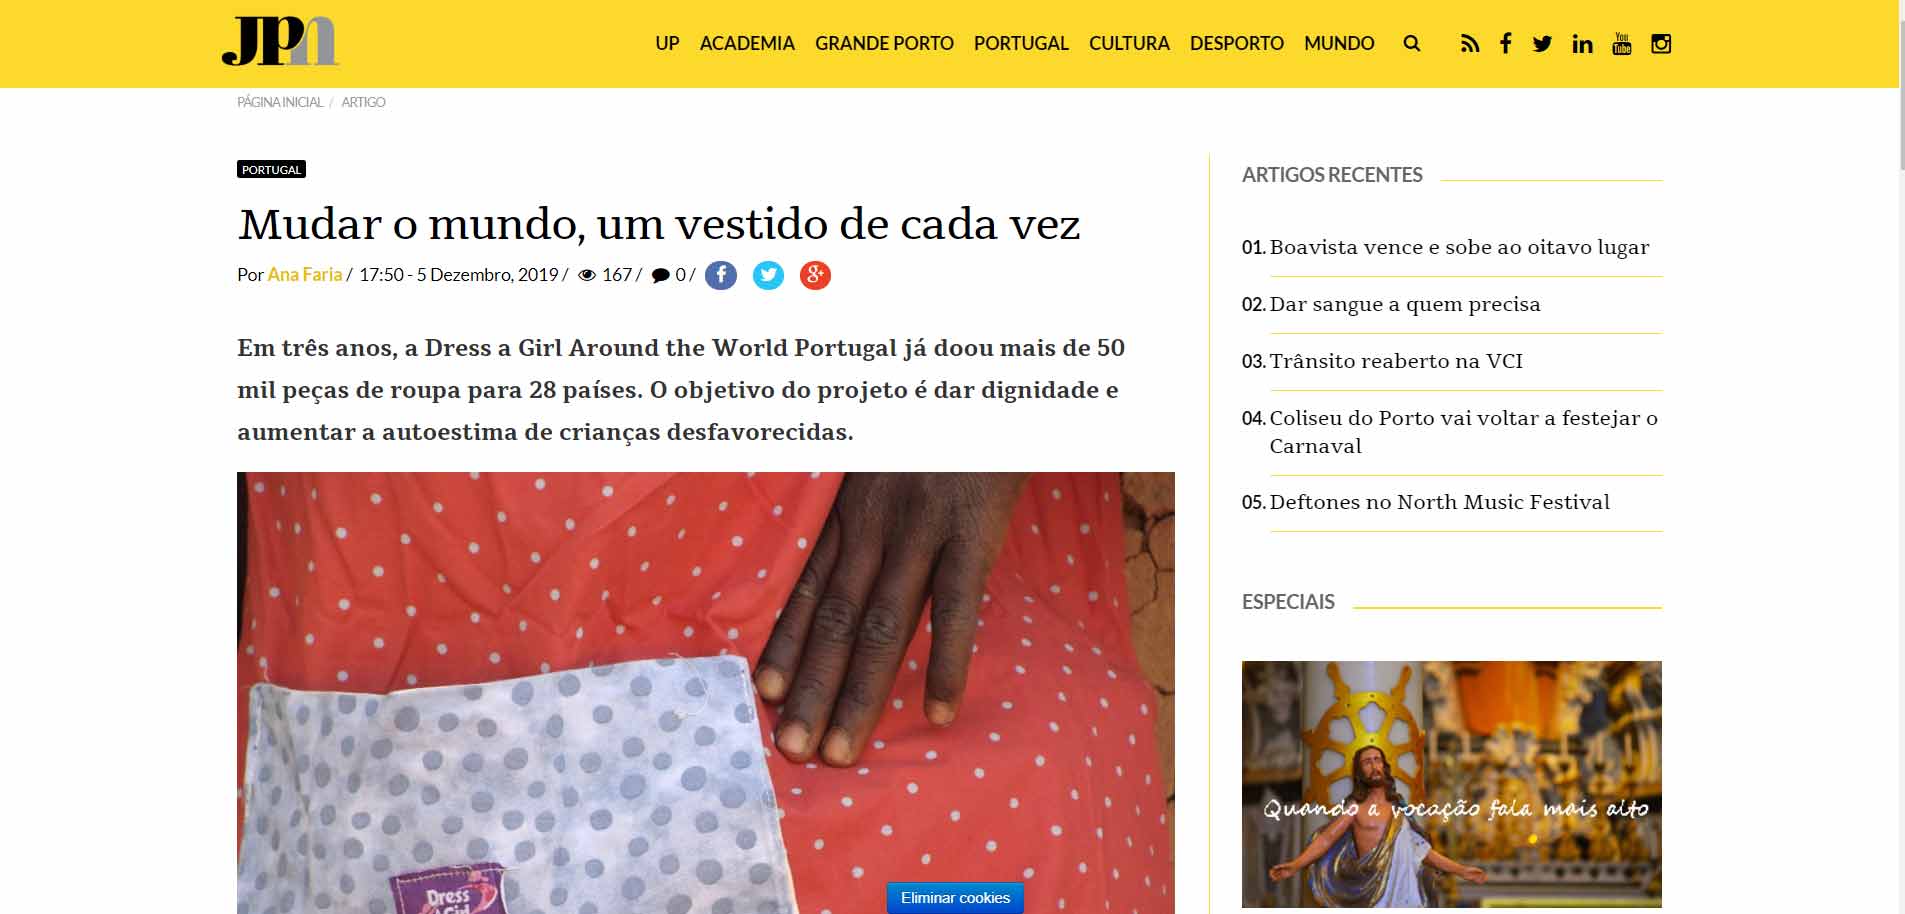 Mudar o mundo, um vestido de cada vez, Por Ana Faria, JPN - Jornalismo PortoNet